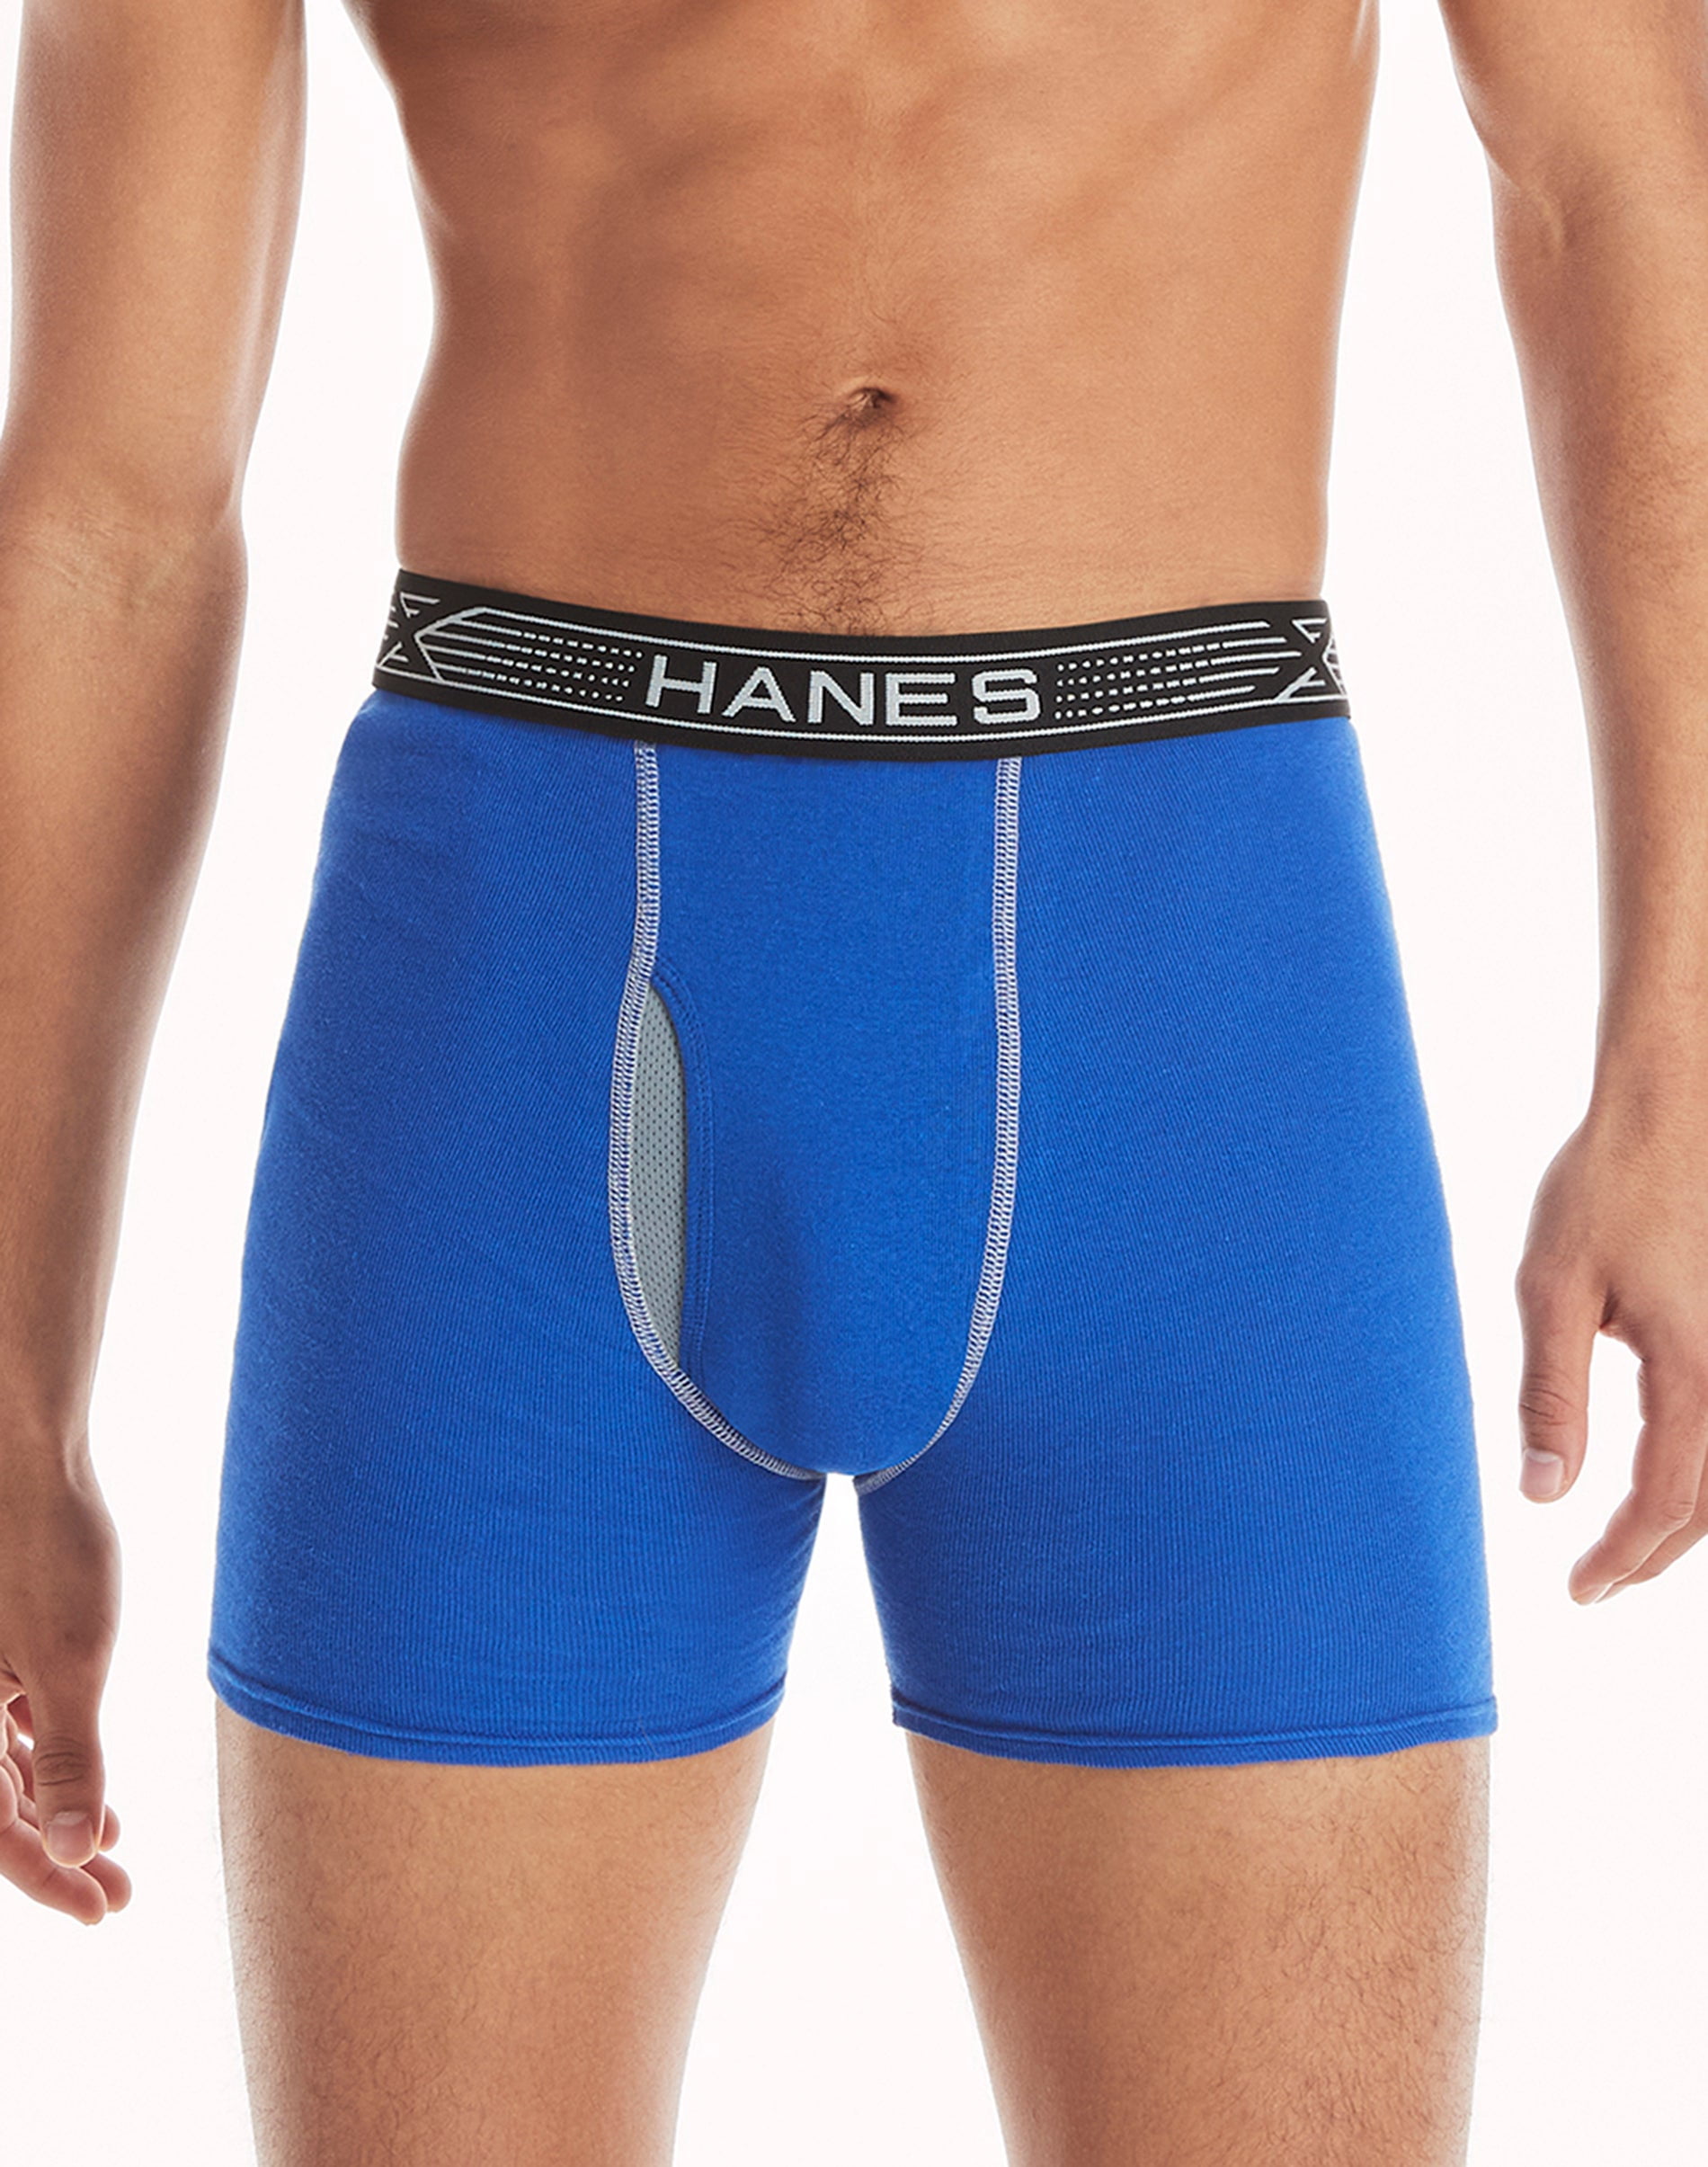 Hanes Sport X-Temp Men's Cotton Boxer Brief Underwear, Assorted, 4-Pack S 